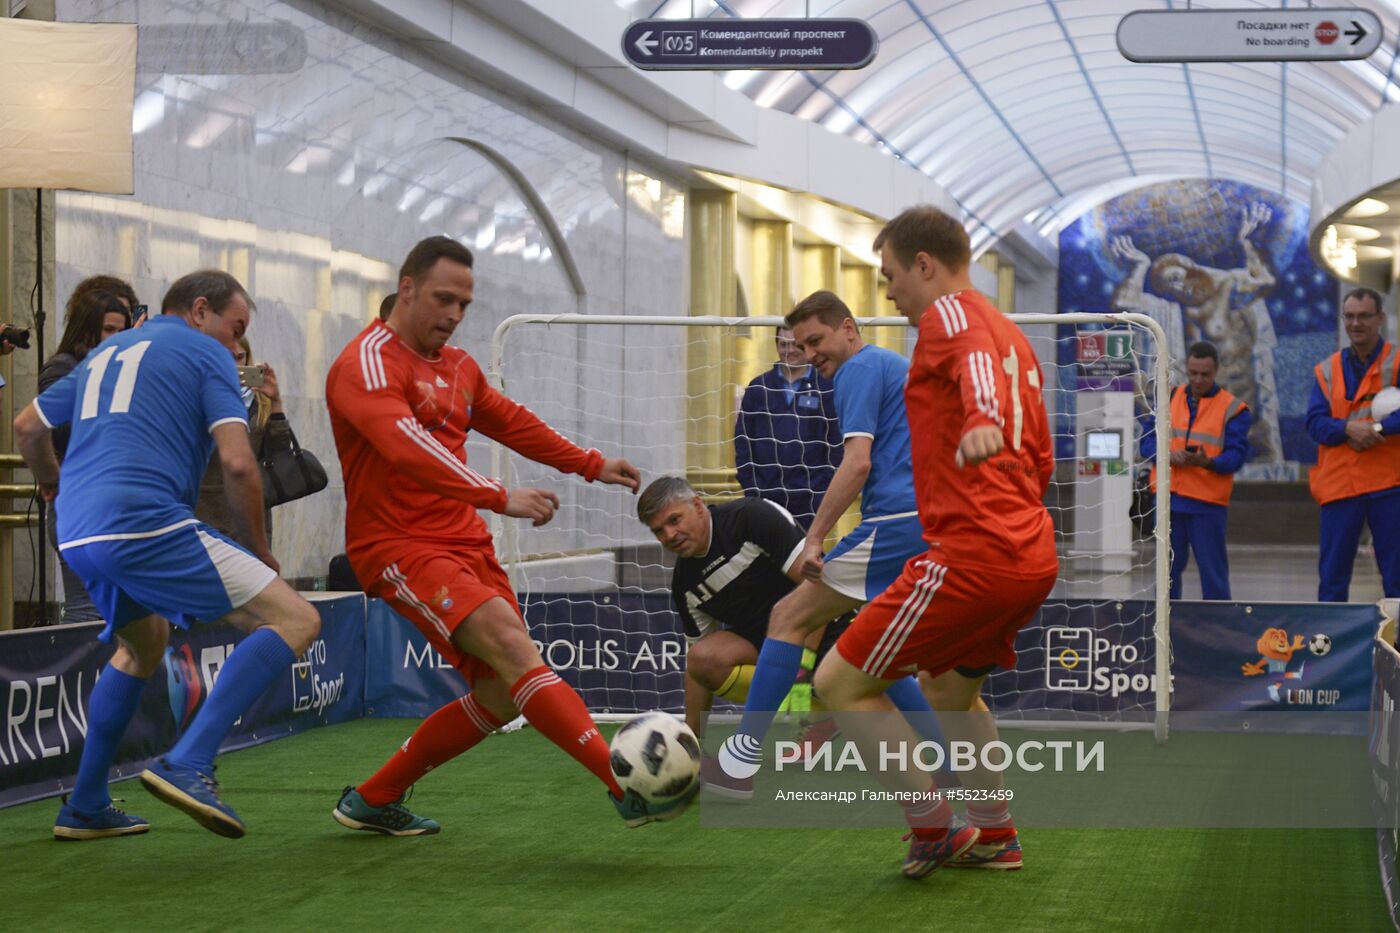 Футбольный матч прошел в петербургском метро